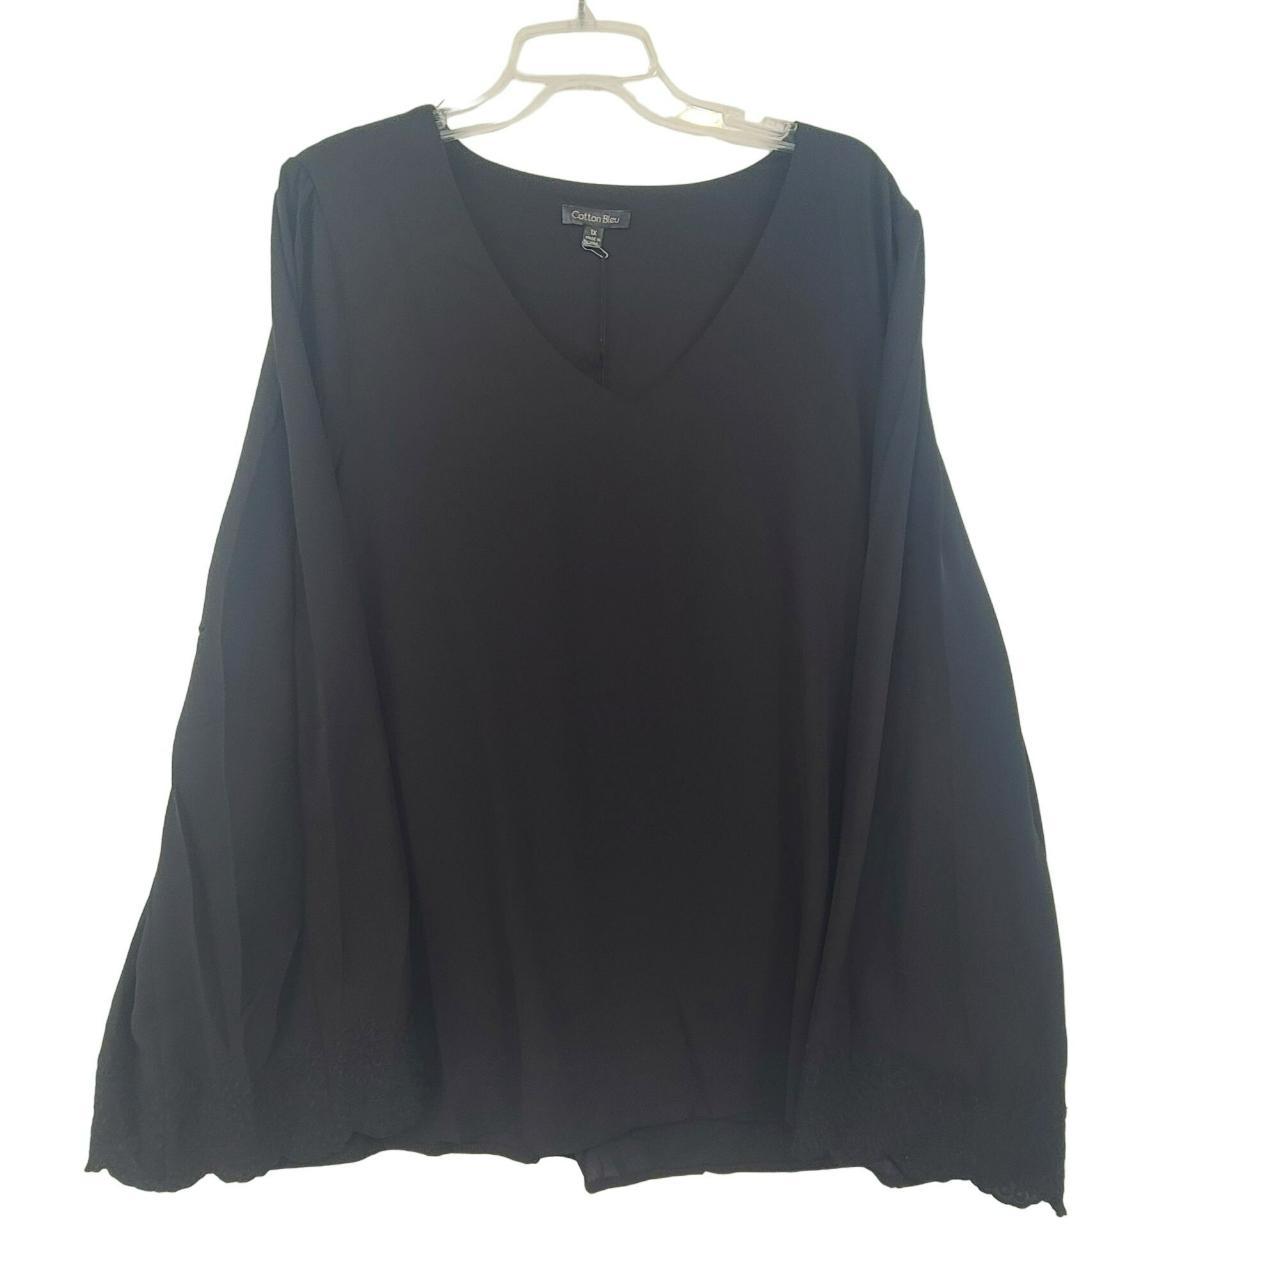 Cotton Bleu NWT Women's Long Sleeve Pullover Top... - Depop